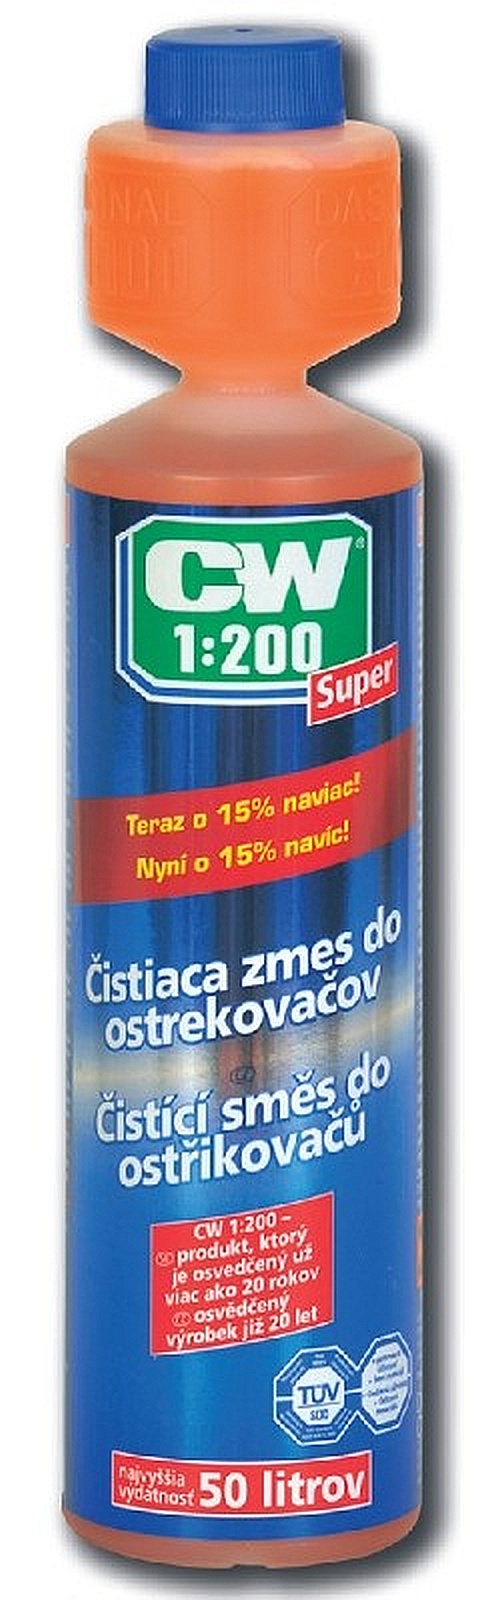 CW 1:200 Super – zmes do ostrekovačov 250ml